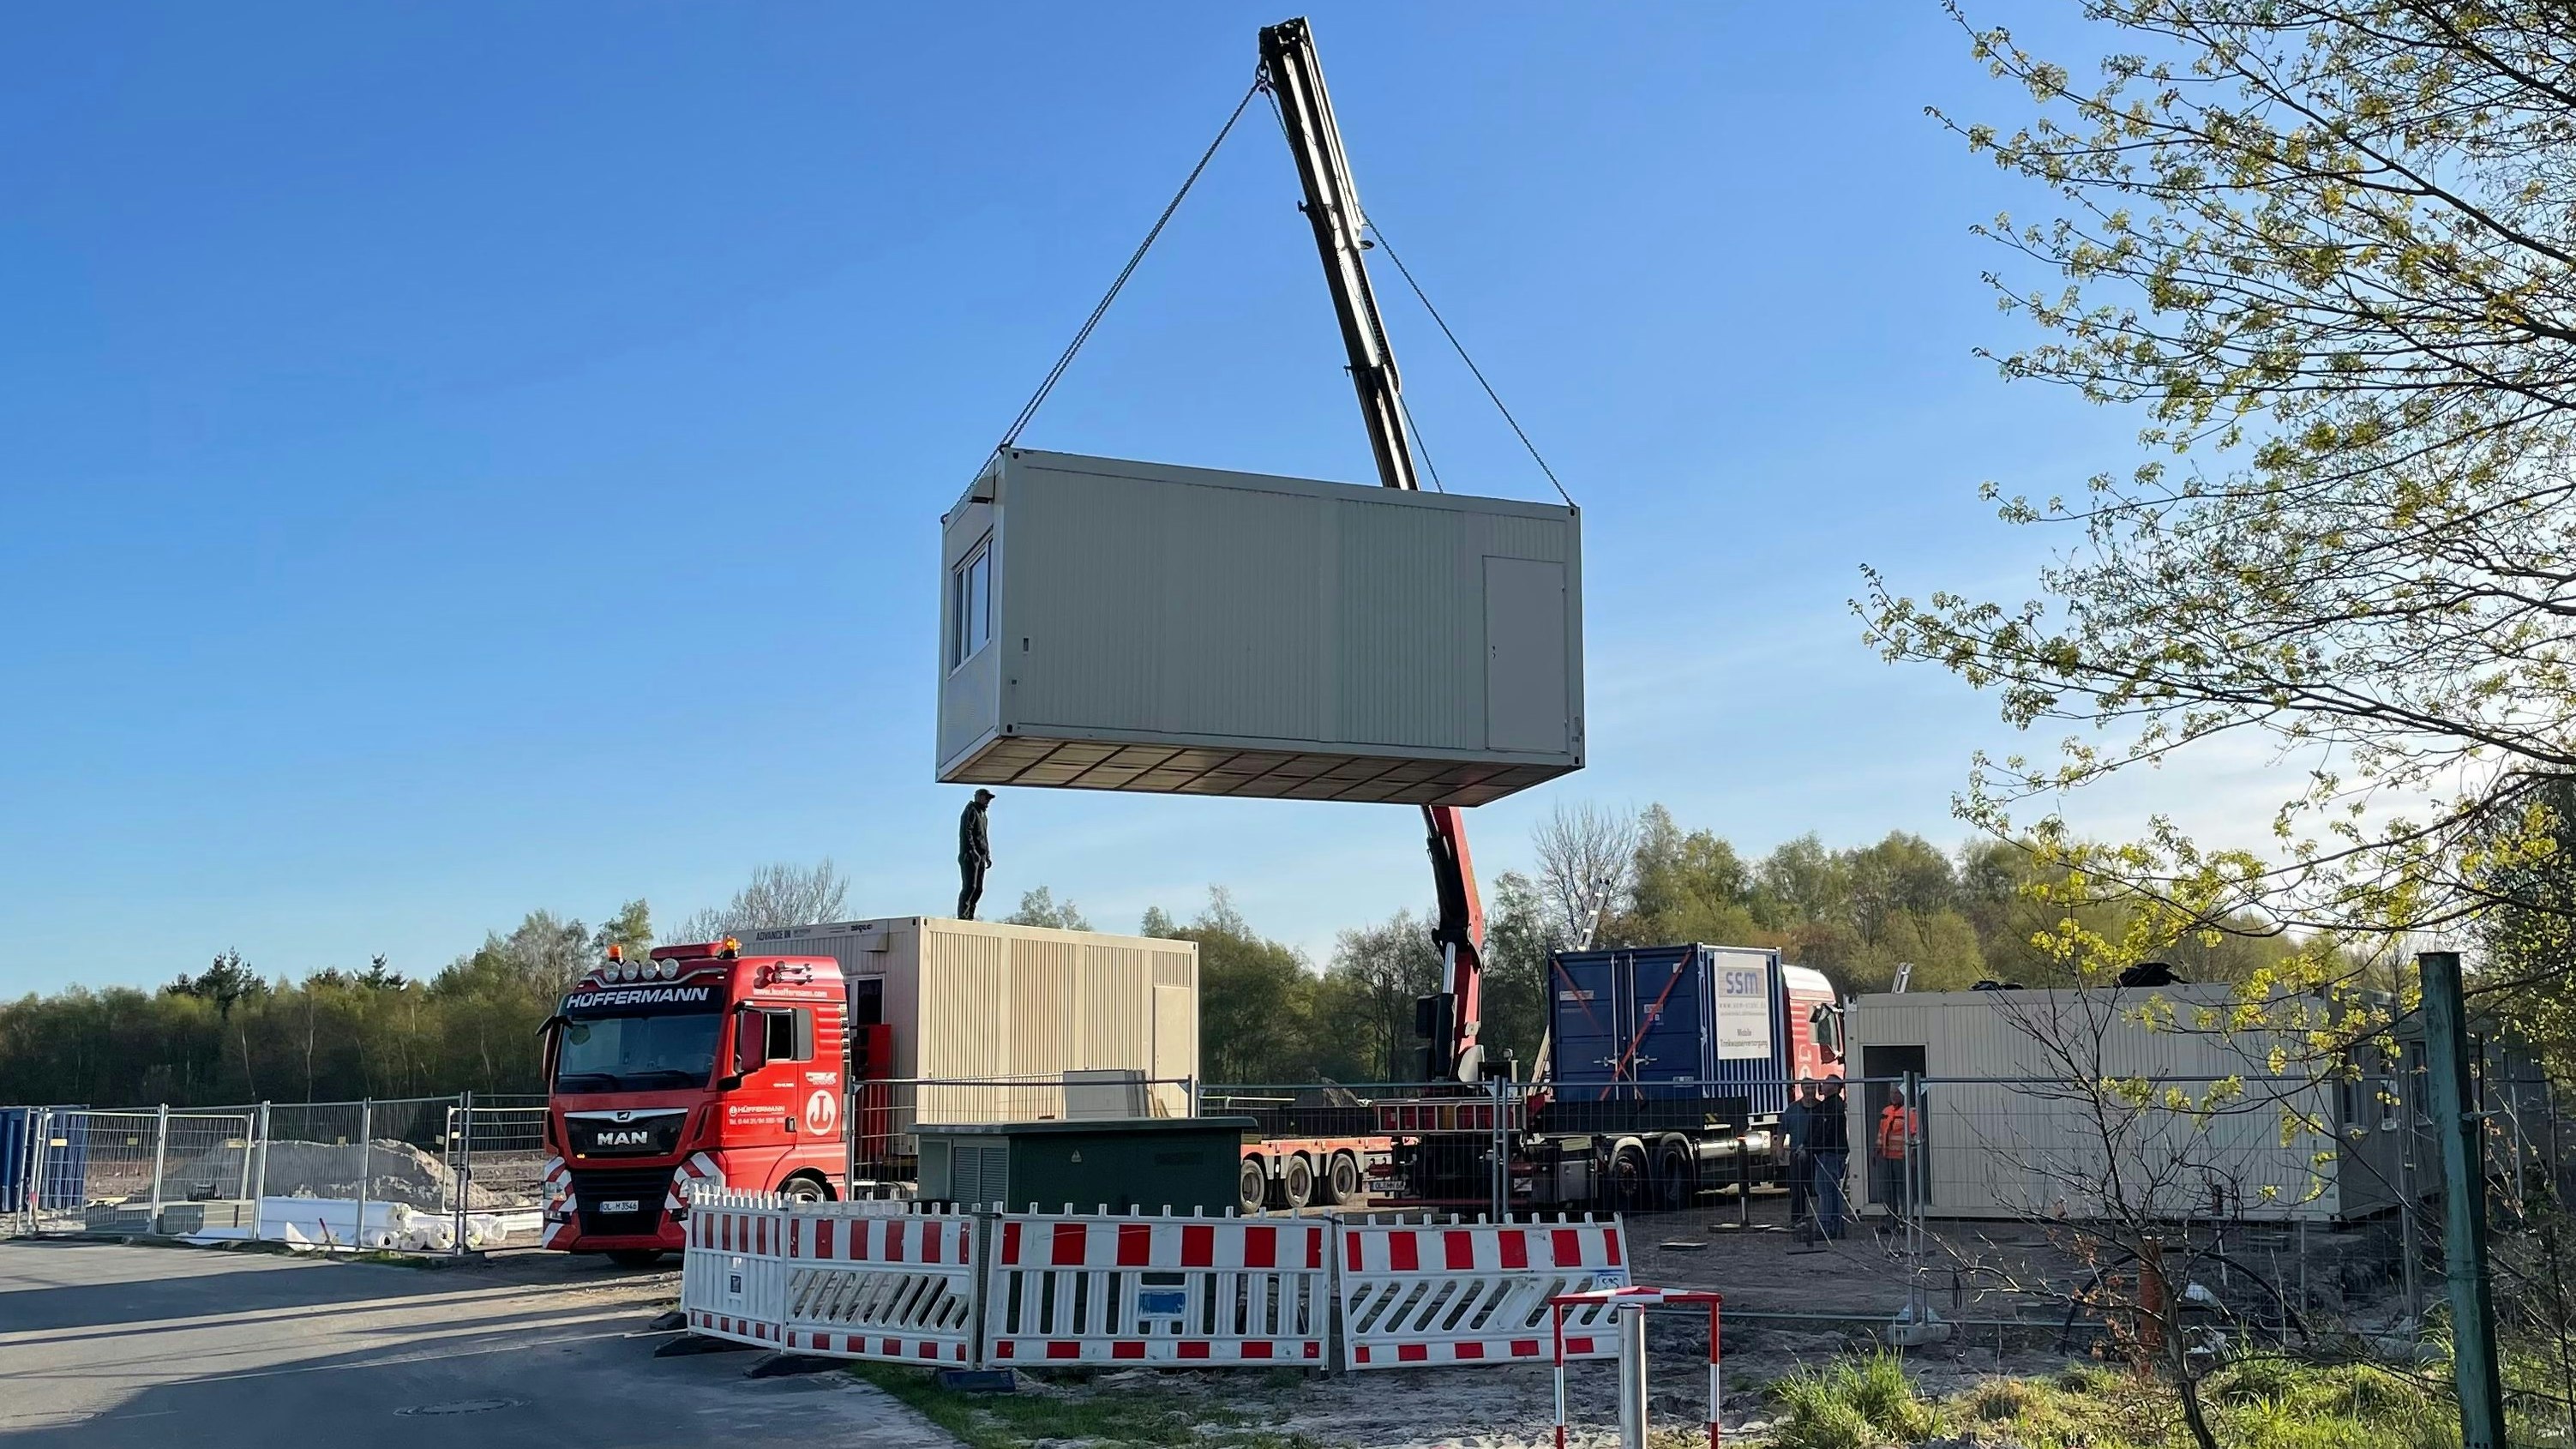 Die Revis Bioenergy aus Münster hat vor knapp 3 Wochen mit dem Bau der geplanten Biomethan-Anlage am C-Port begonnen. Das Gewerbeaufsichtsamt hatte unter Auflagen die Genehmigung dazu erteilt. Derzeit wird geprüft, ob Rechtsmittel dagegen Erfolgschancen haben. Foto: Stix